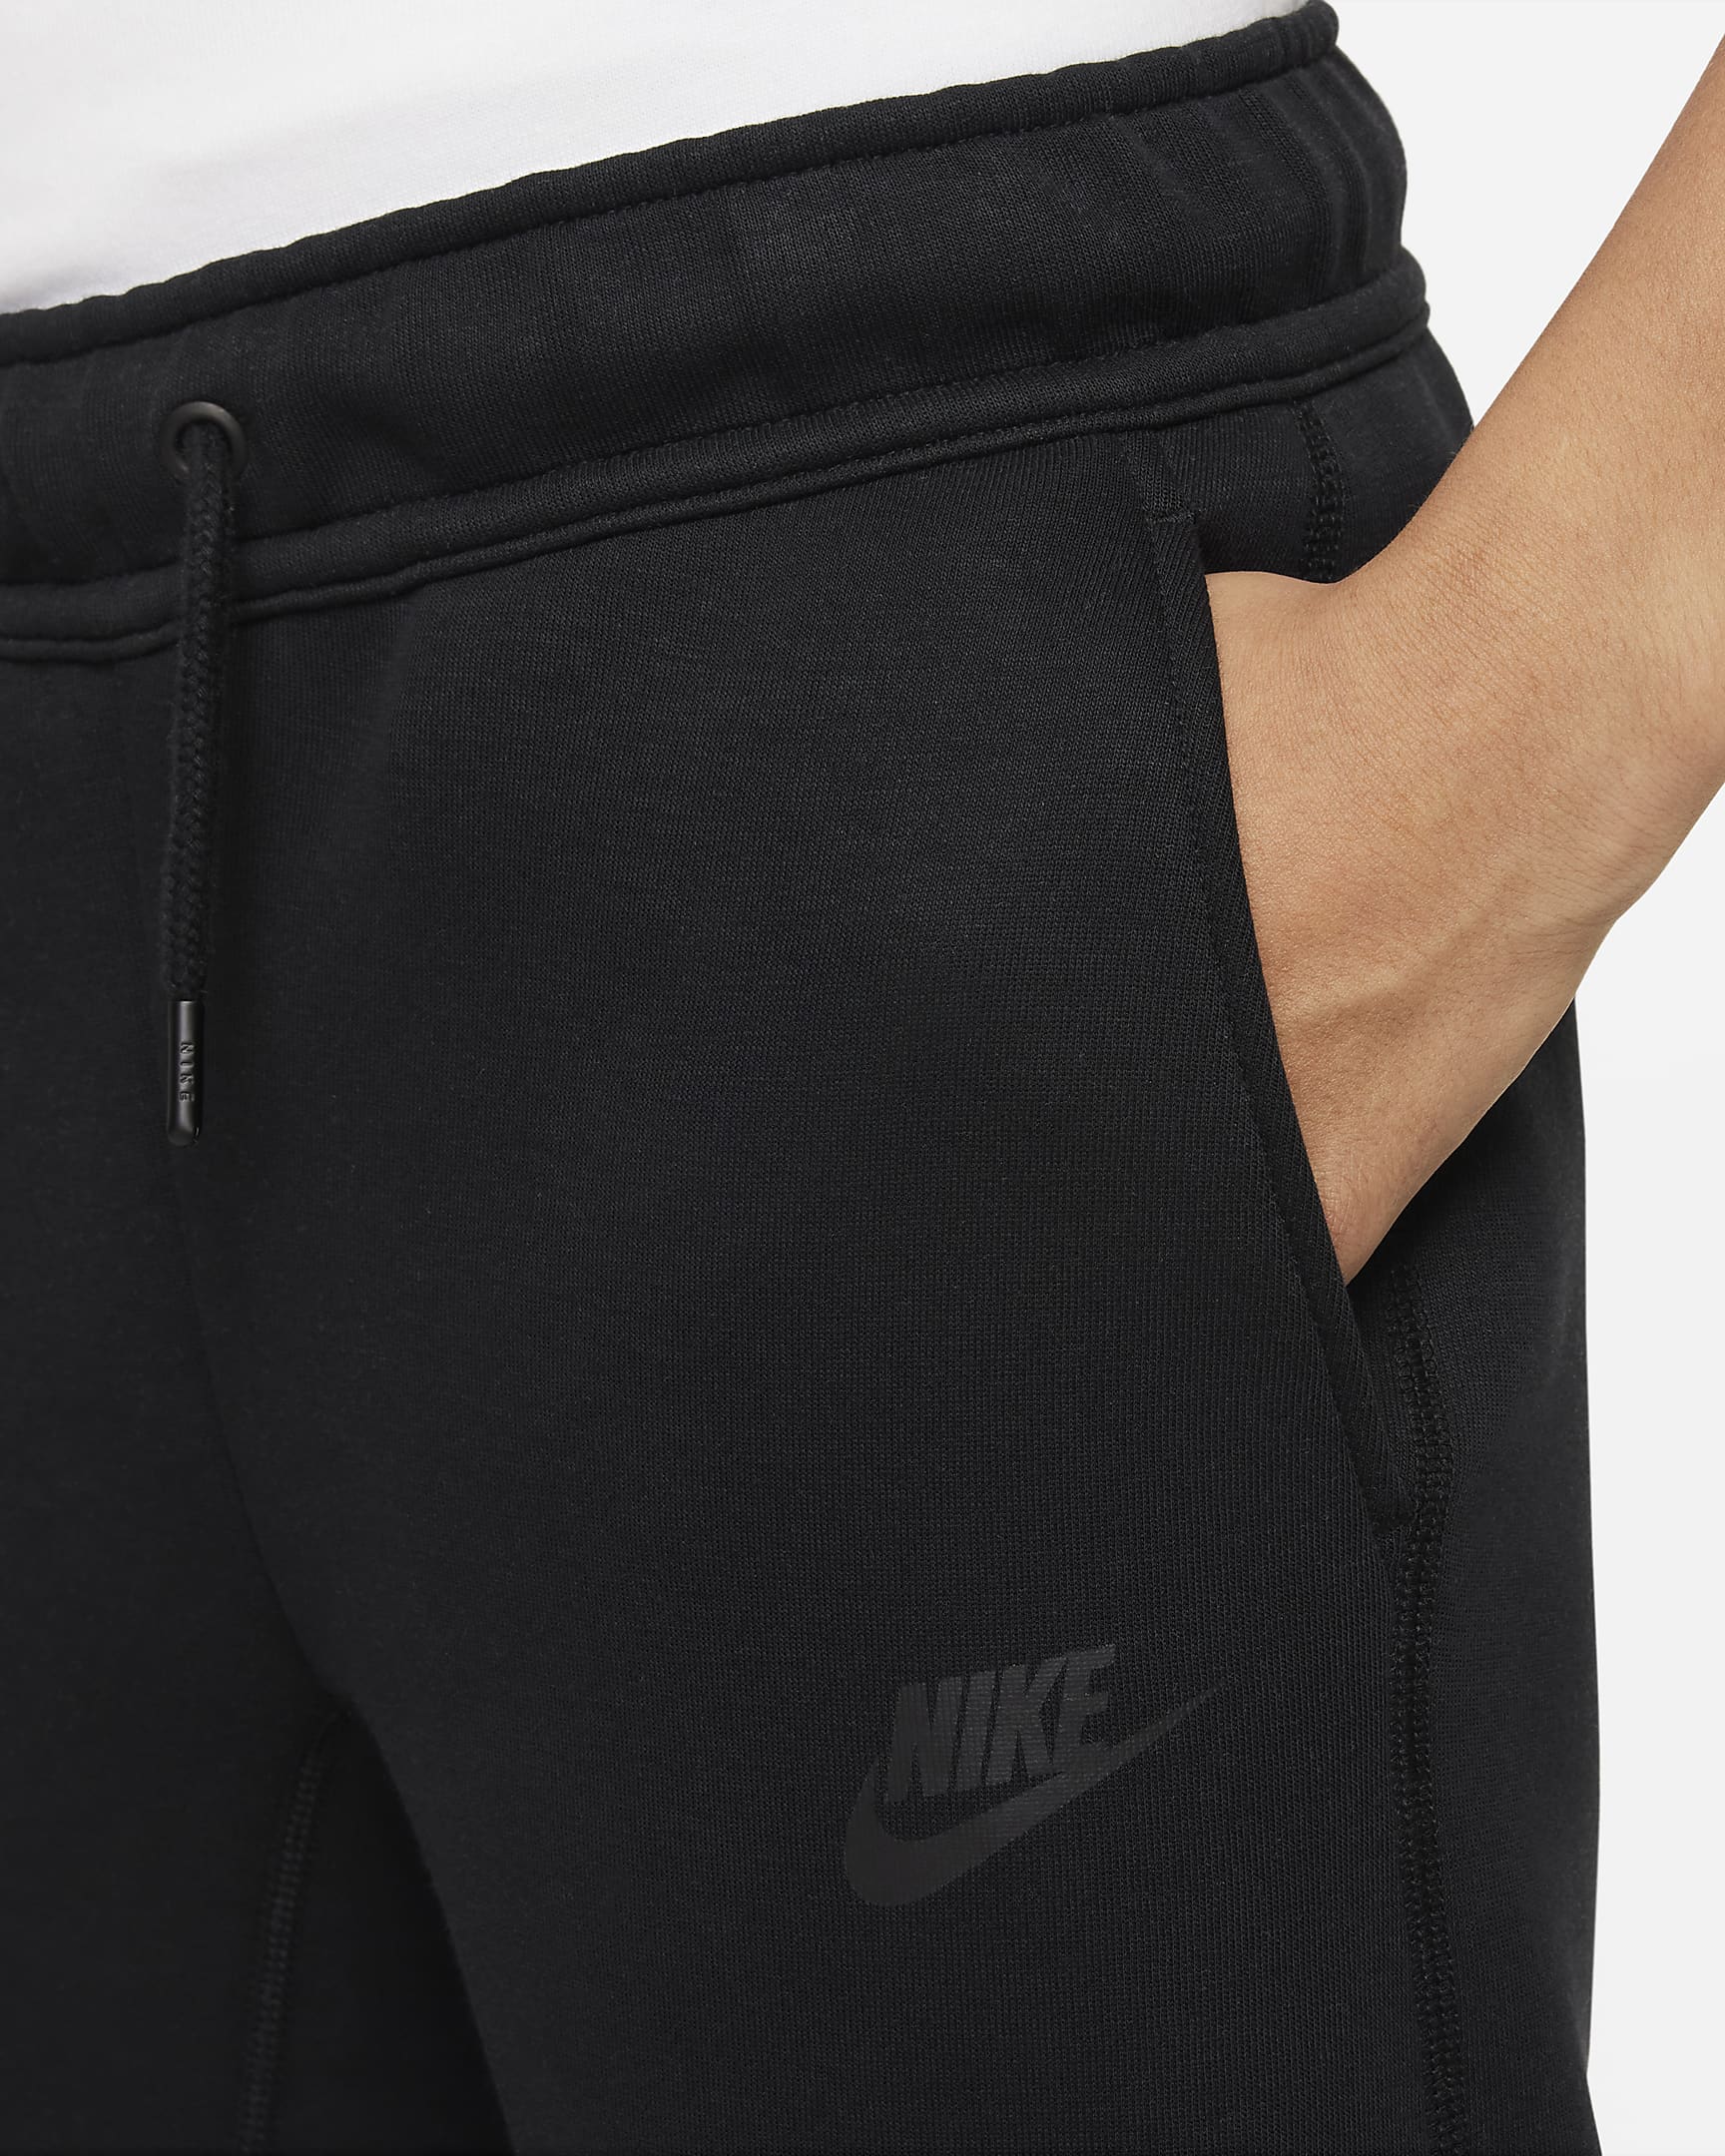 Nike Sportswear Tech Fleece Older Kids' (Boys') Trousers - Black/Black/Black